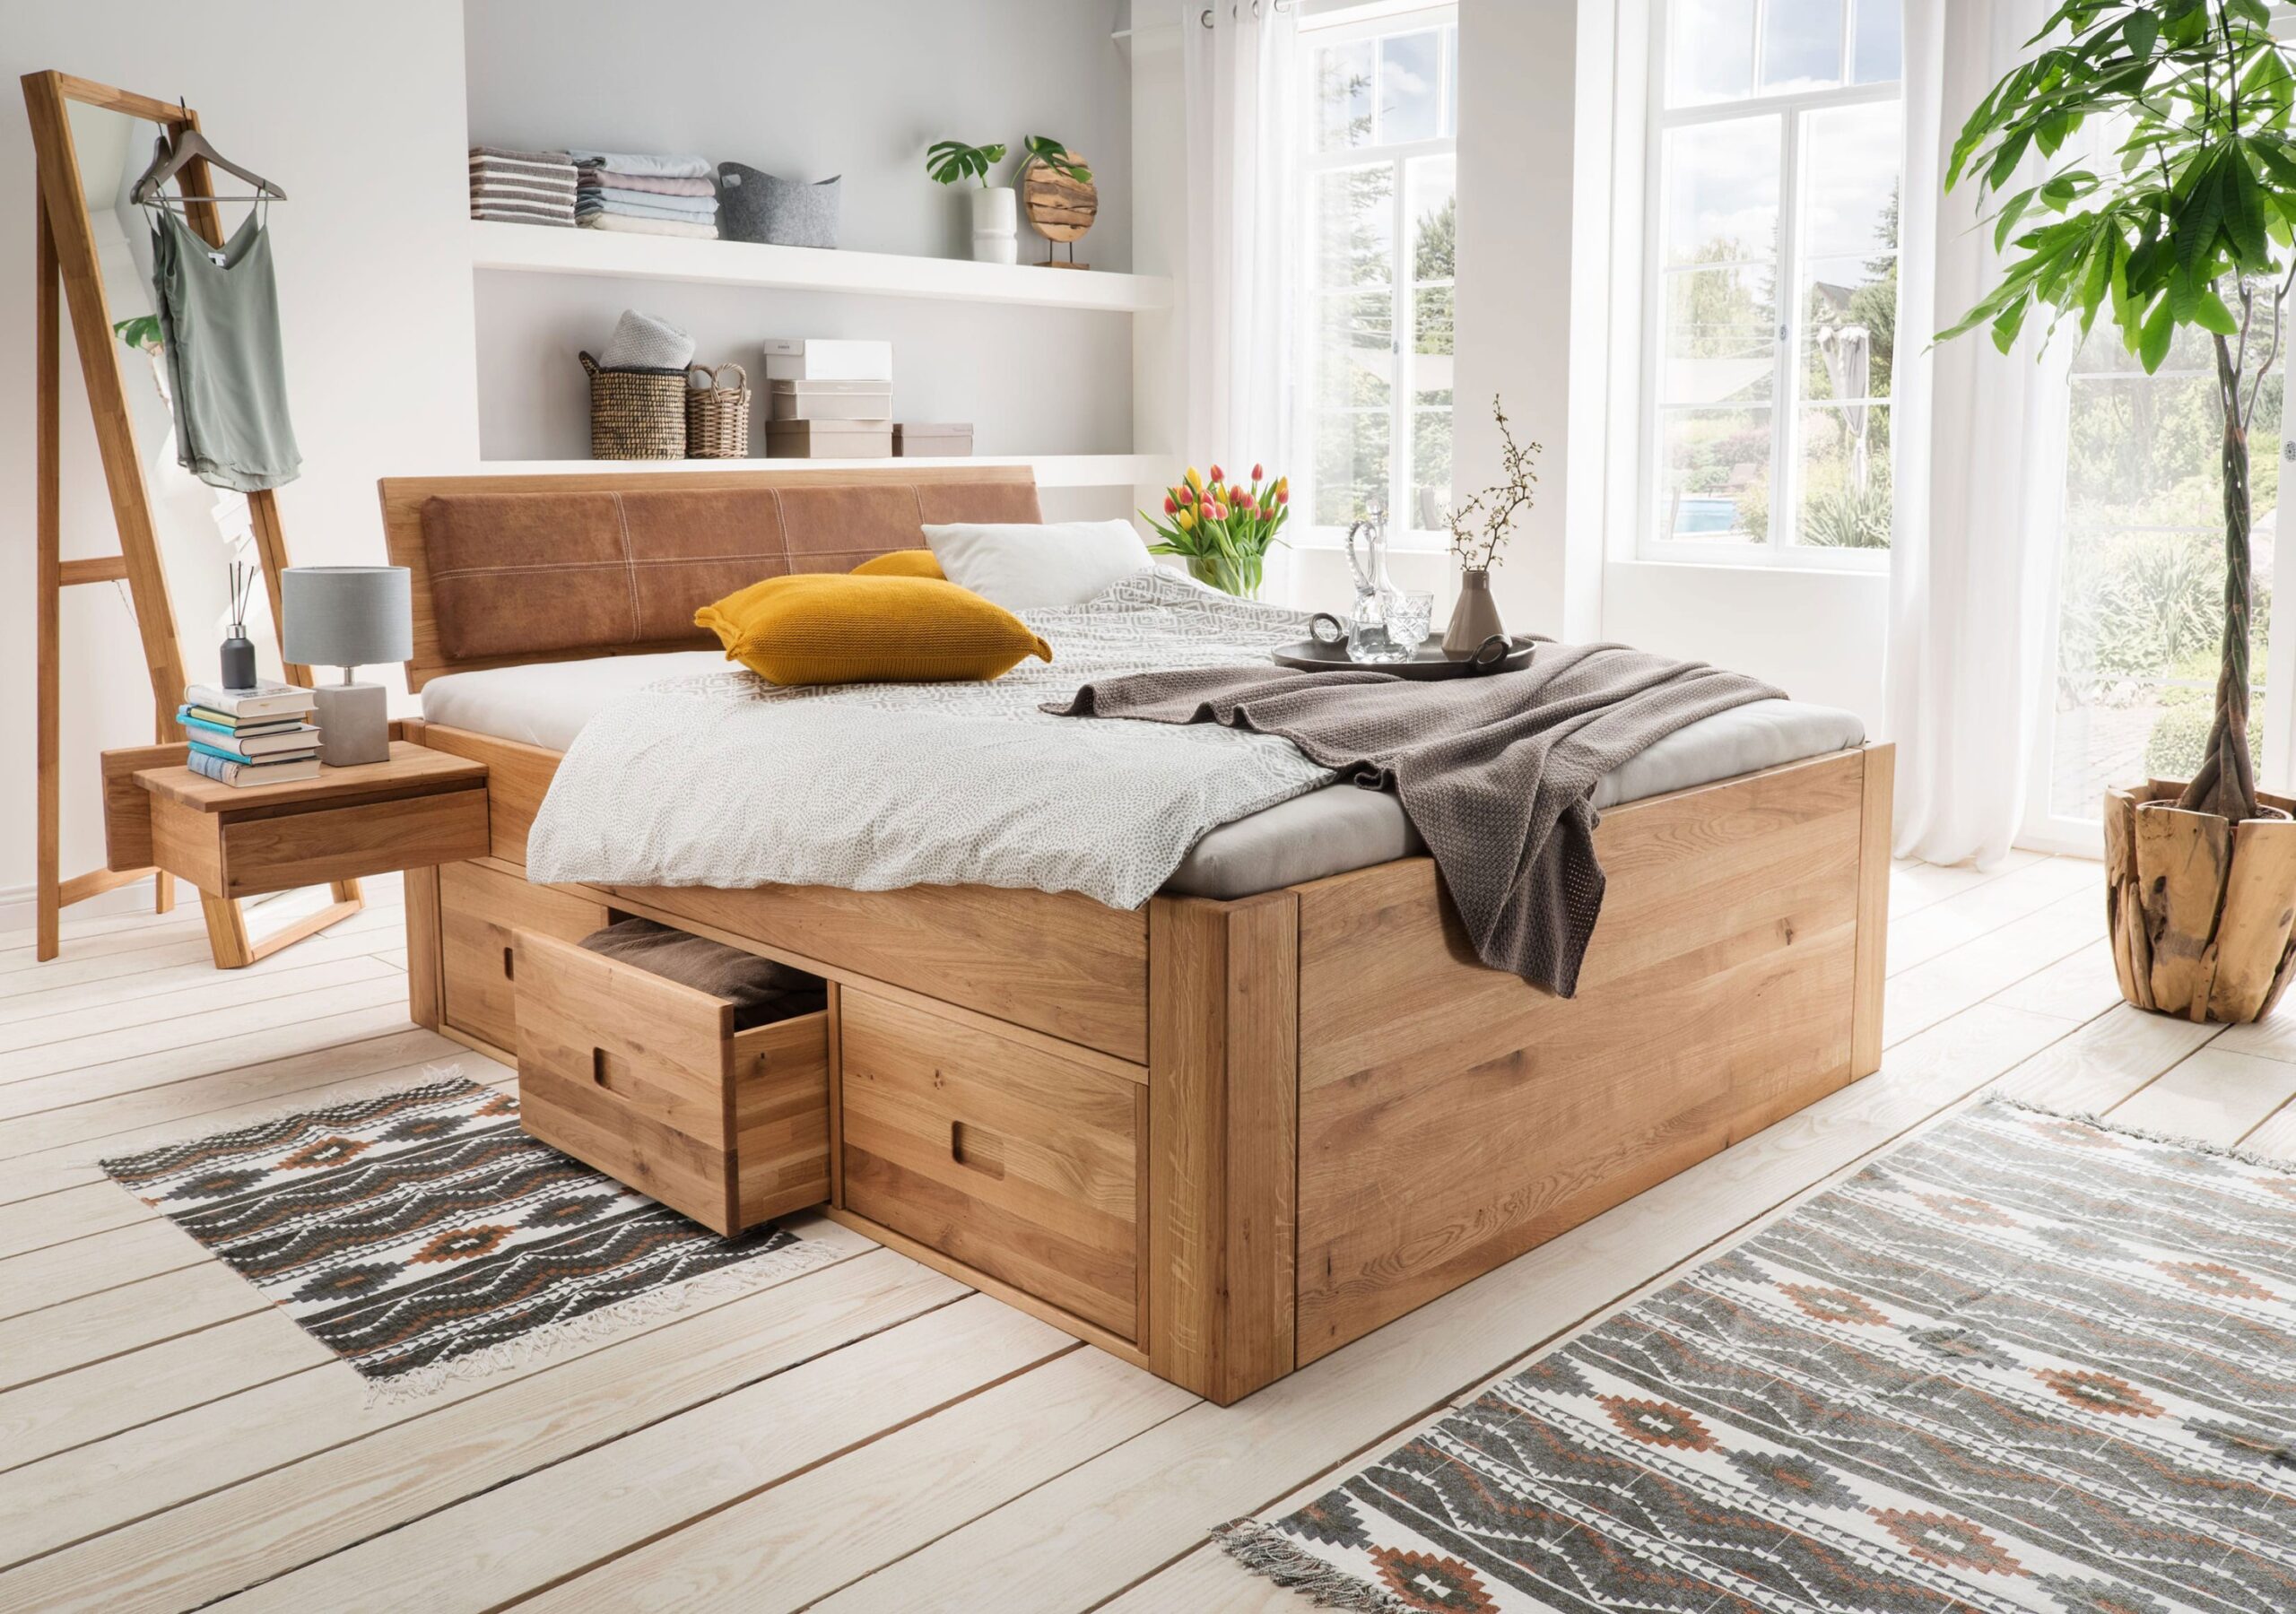 Stilvolles Massivholzbett In 180×200 Mit Komfortabler Höhe Für Entspannten Schlaf